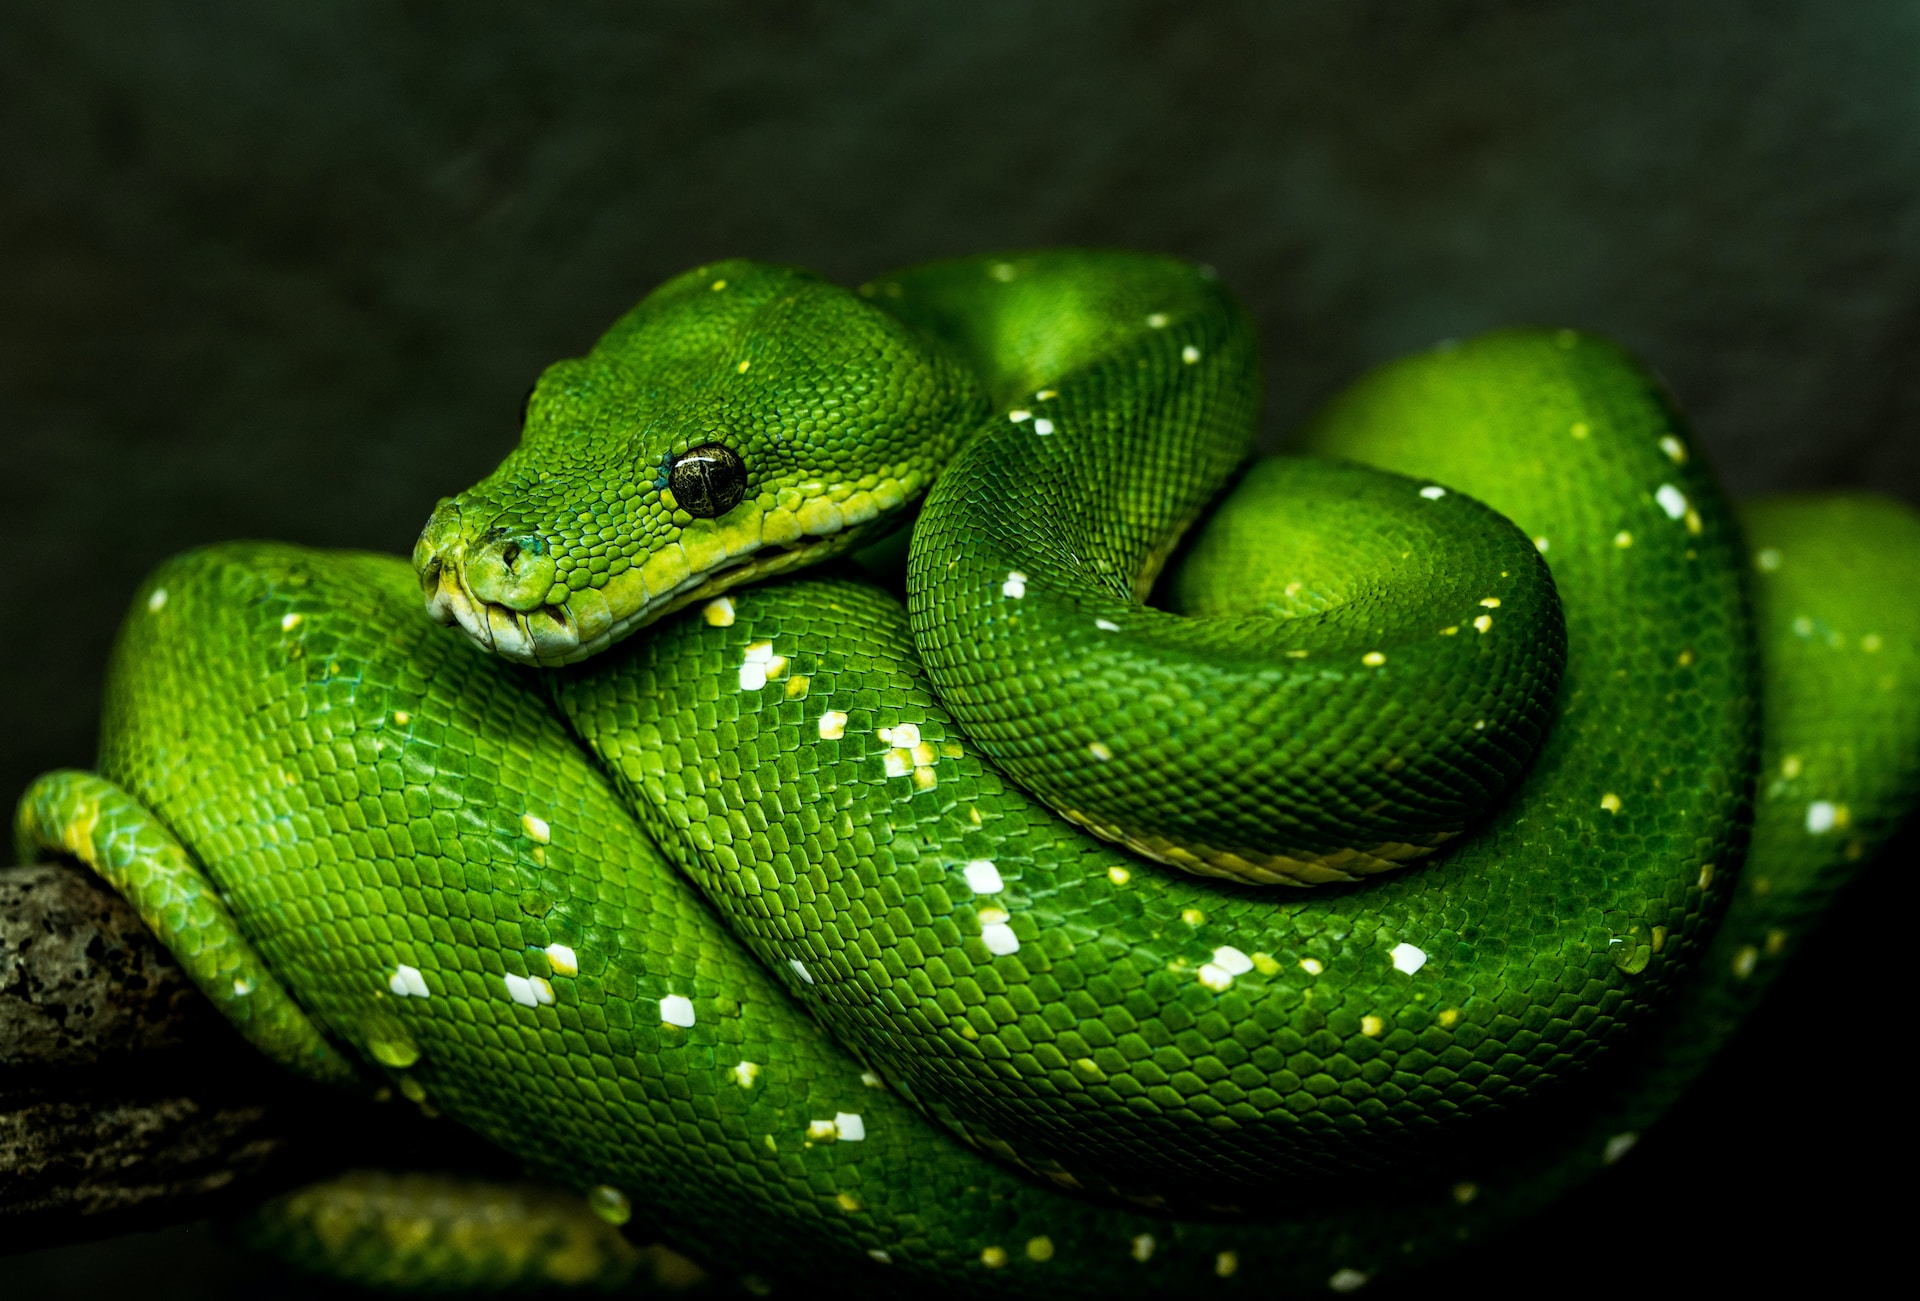 Python. Photo by David Clode on Unsplash